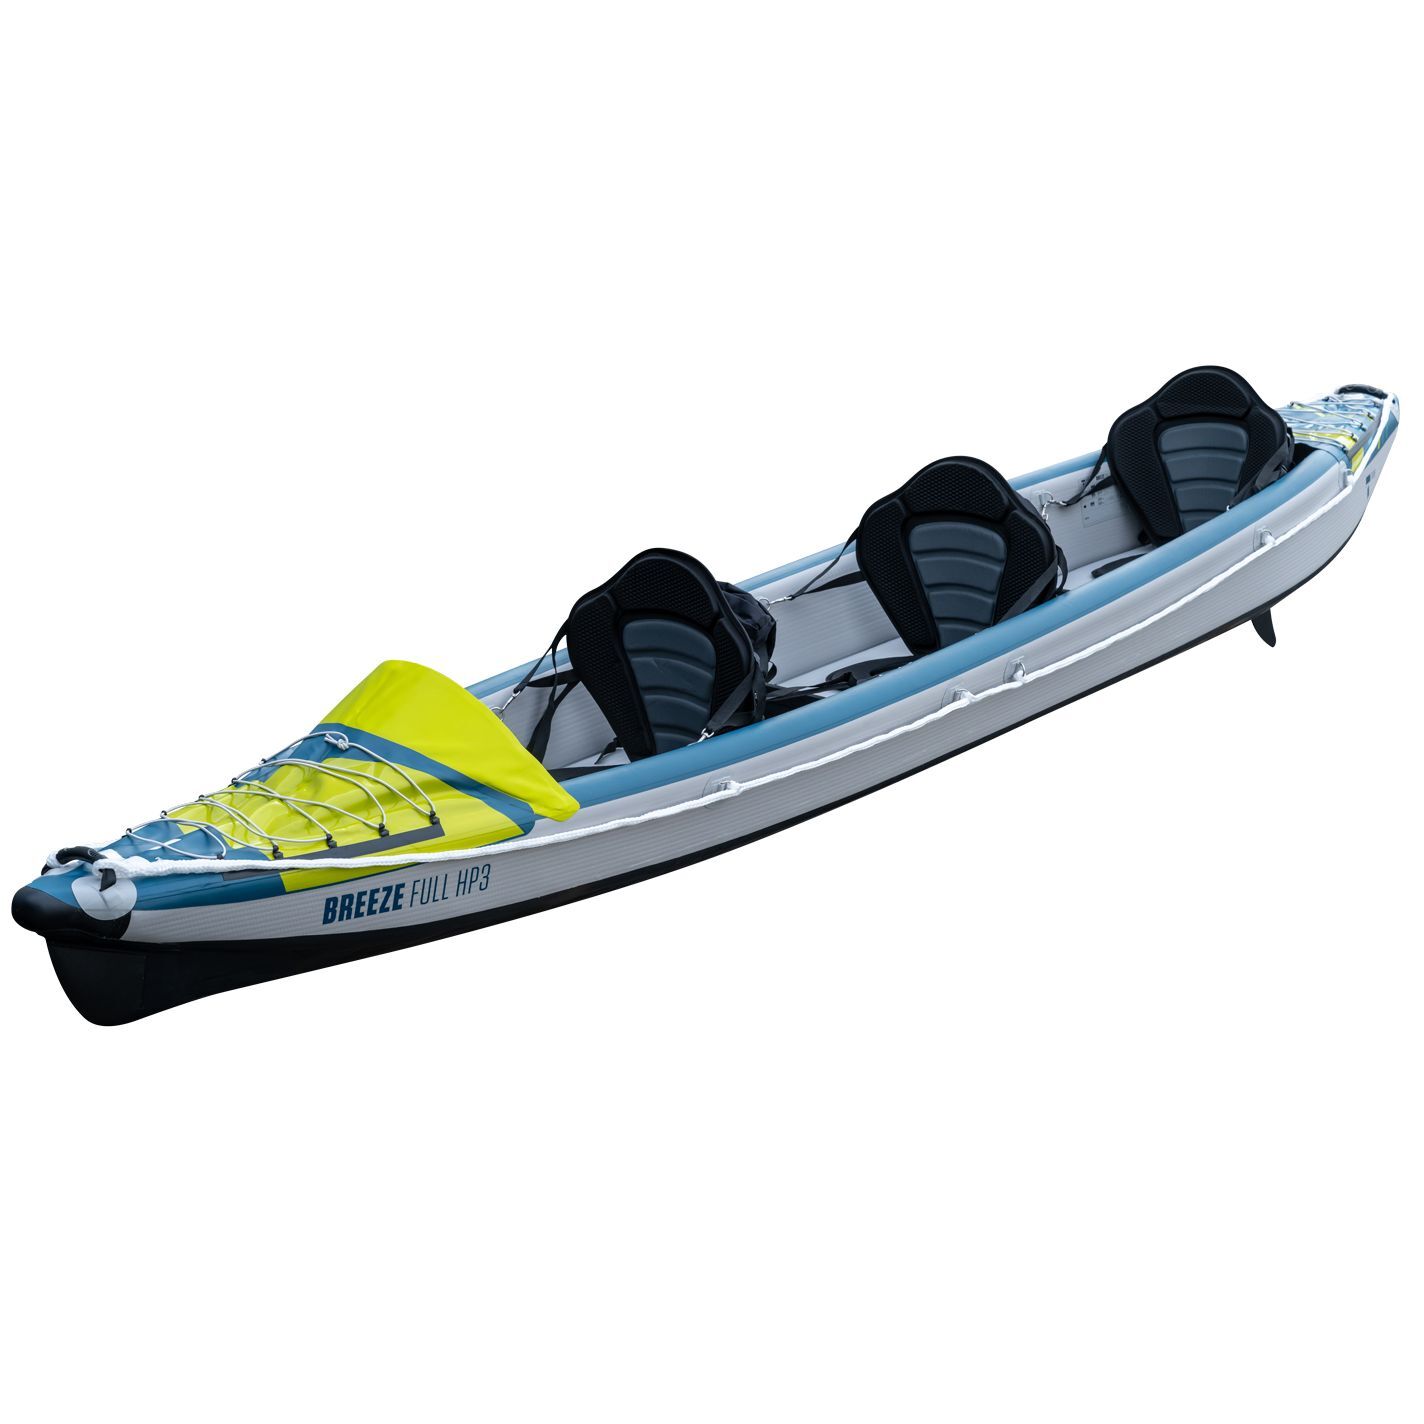 Tahe Outdoor Kayak Air Breeze Full Hp3 - Inflatable kayak